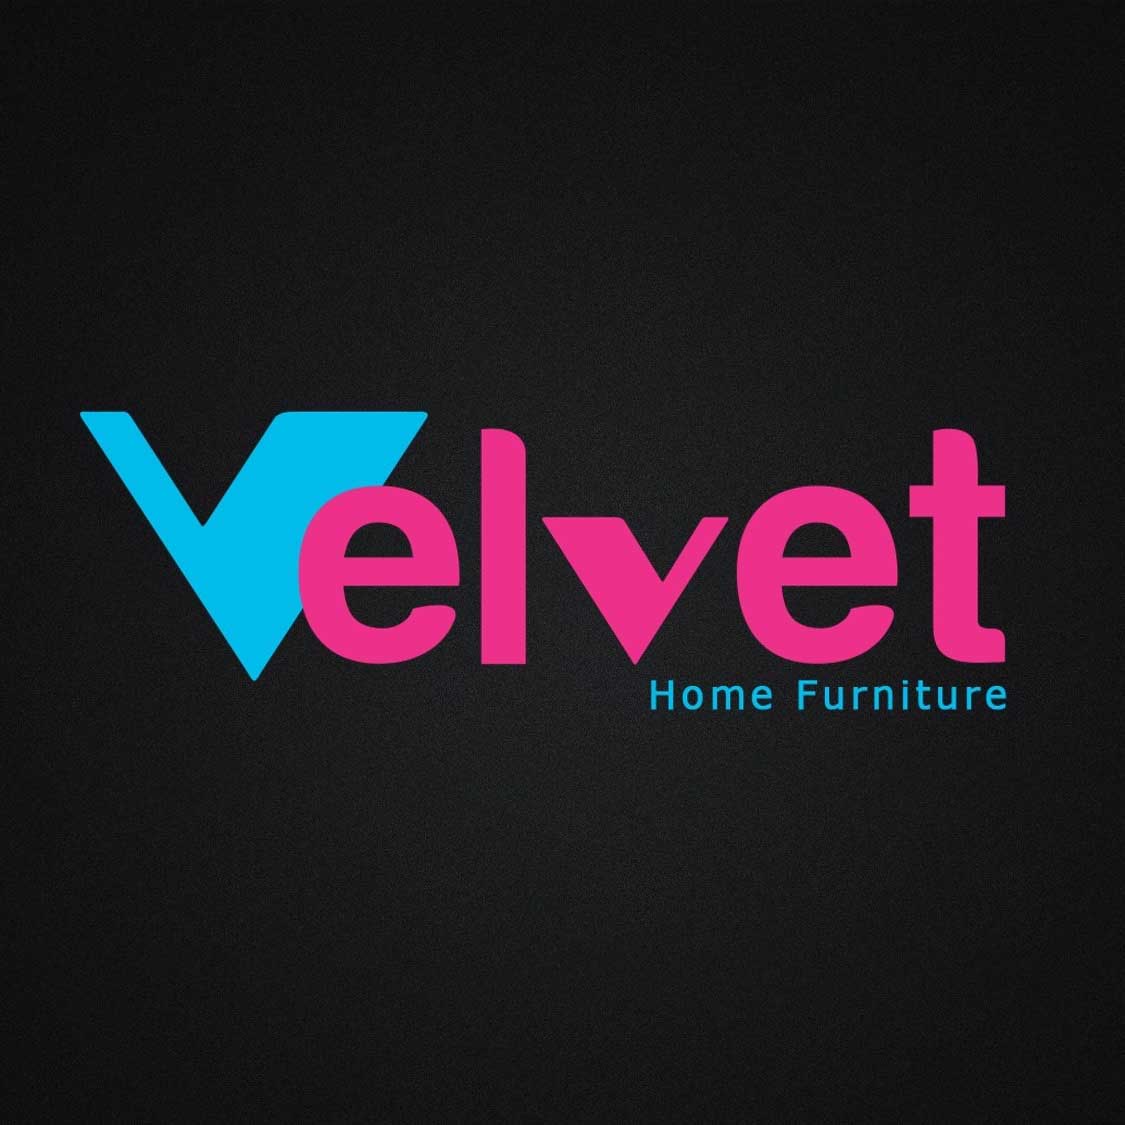 Velvet Home Furniture